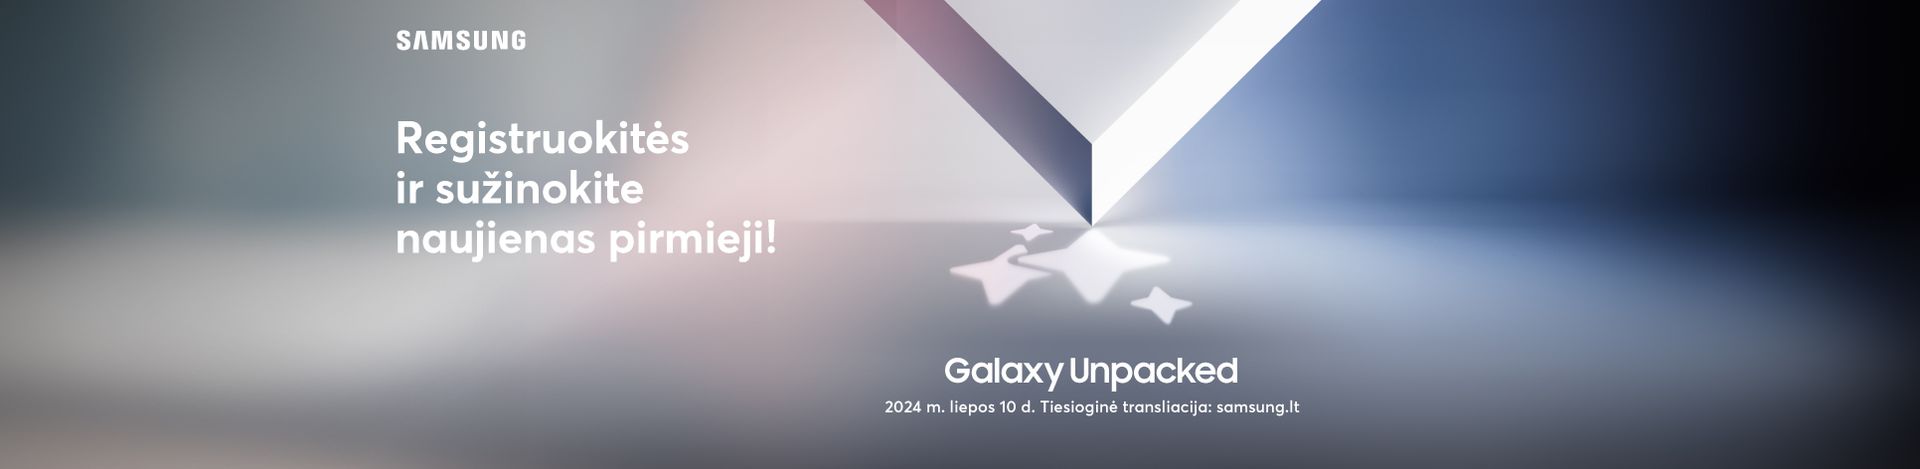 Registruokitės ir sužinokite apie Samsung naujienas pirmieji - Galaxy Unpacked transliacija jau liepos 10 dieną